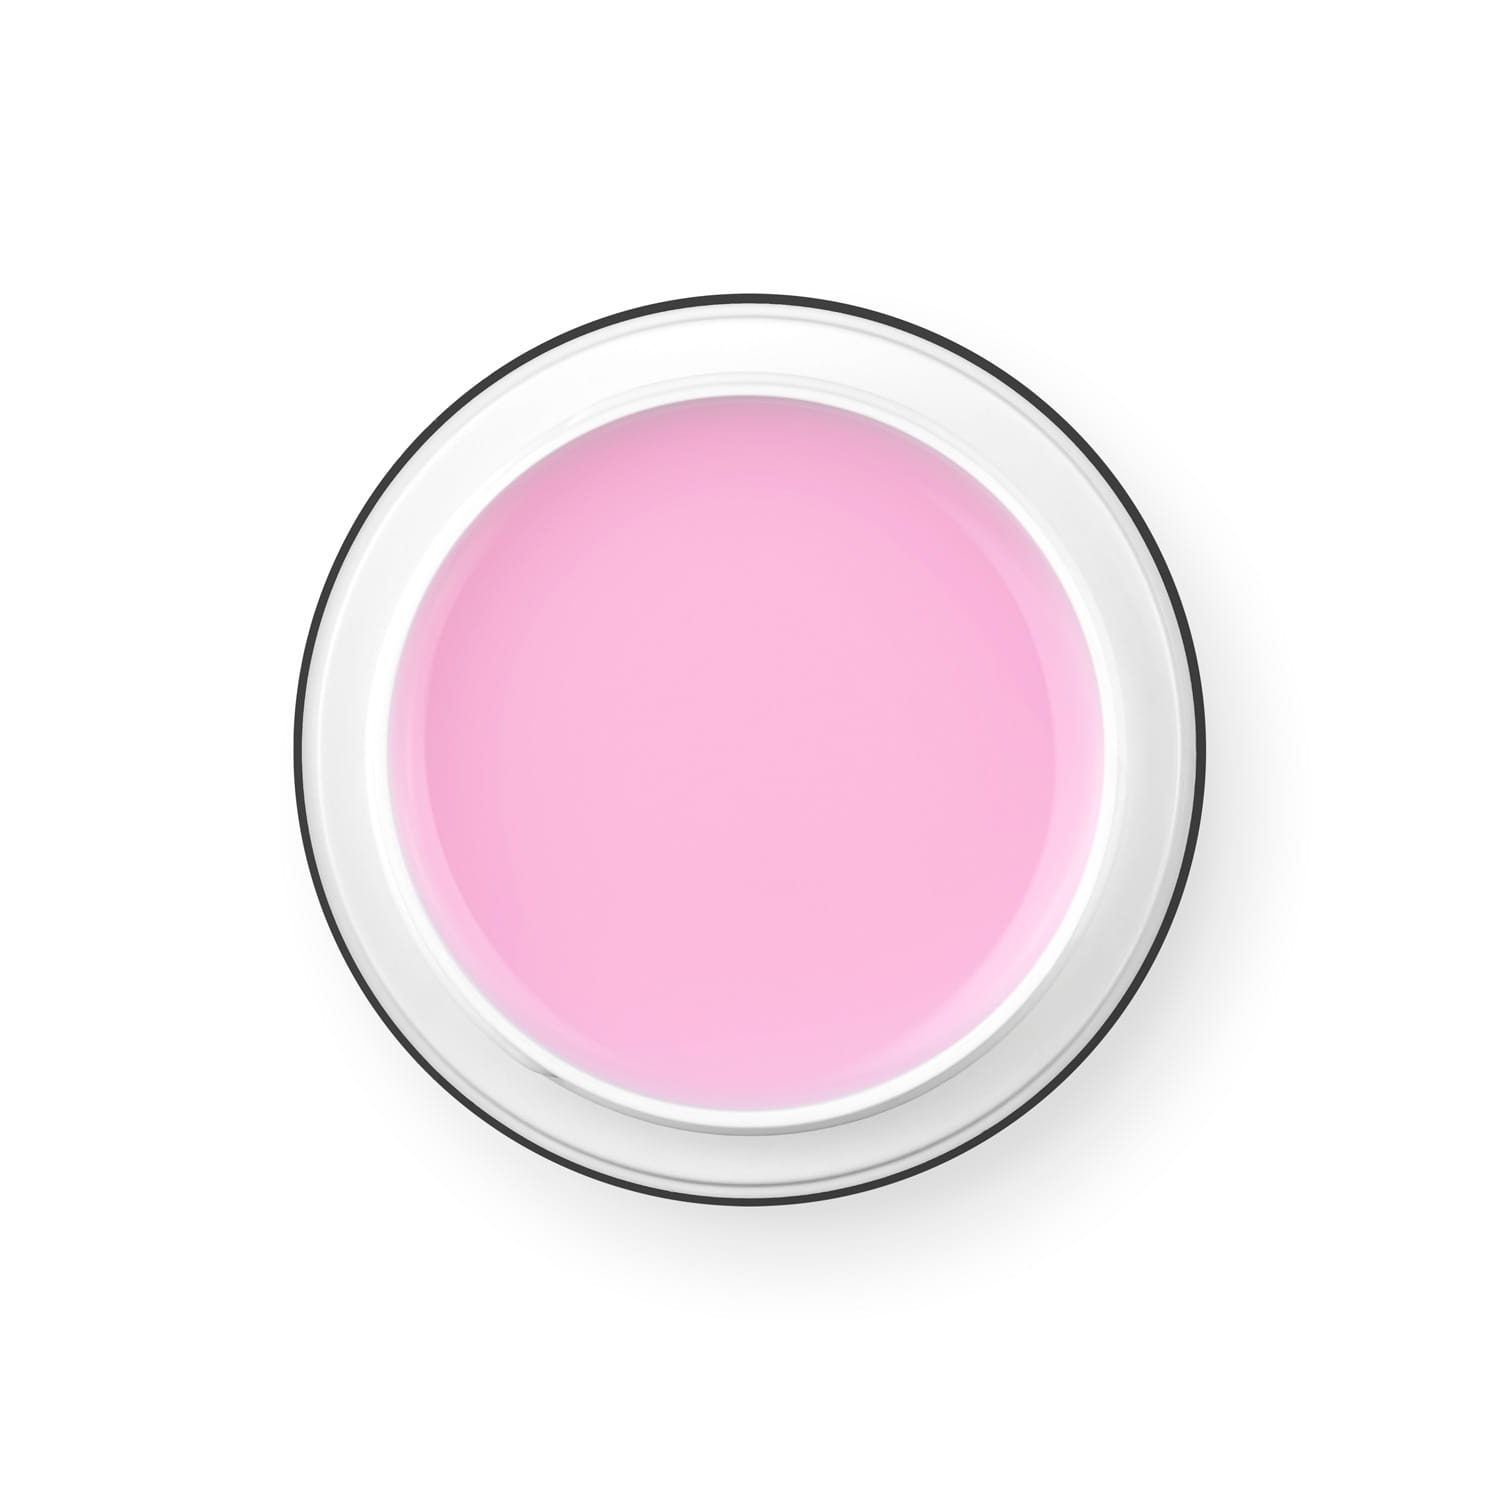 PALU Pro Light Builder építőzselé 12g - Soft Pink